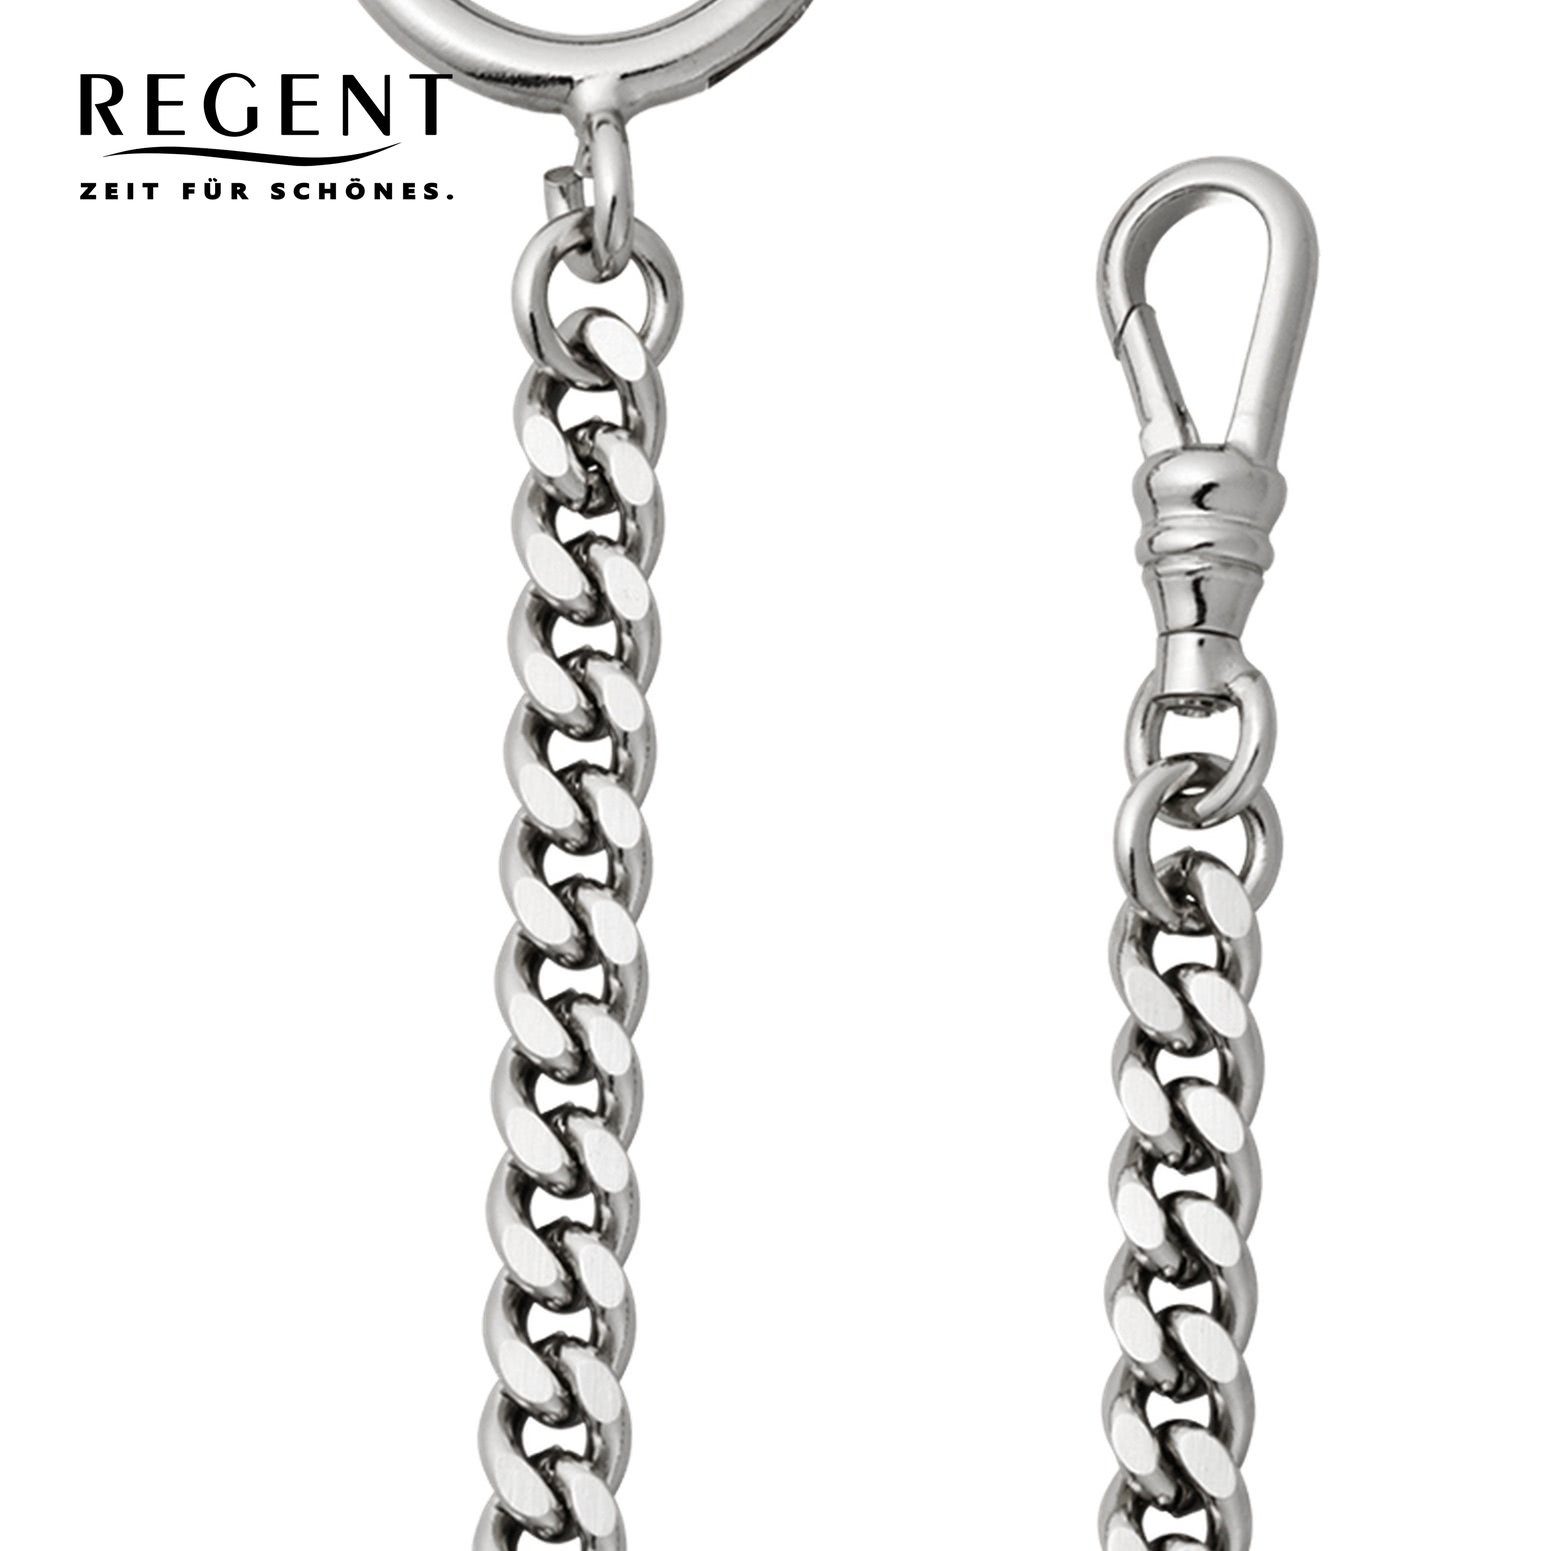 Herren Regent Taschenuhren-Kette Kettenuhr Regent Elegant Taschenuhrenkette, 5mm P-45,